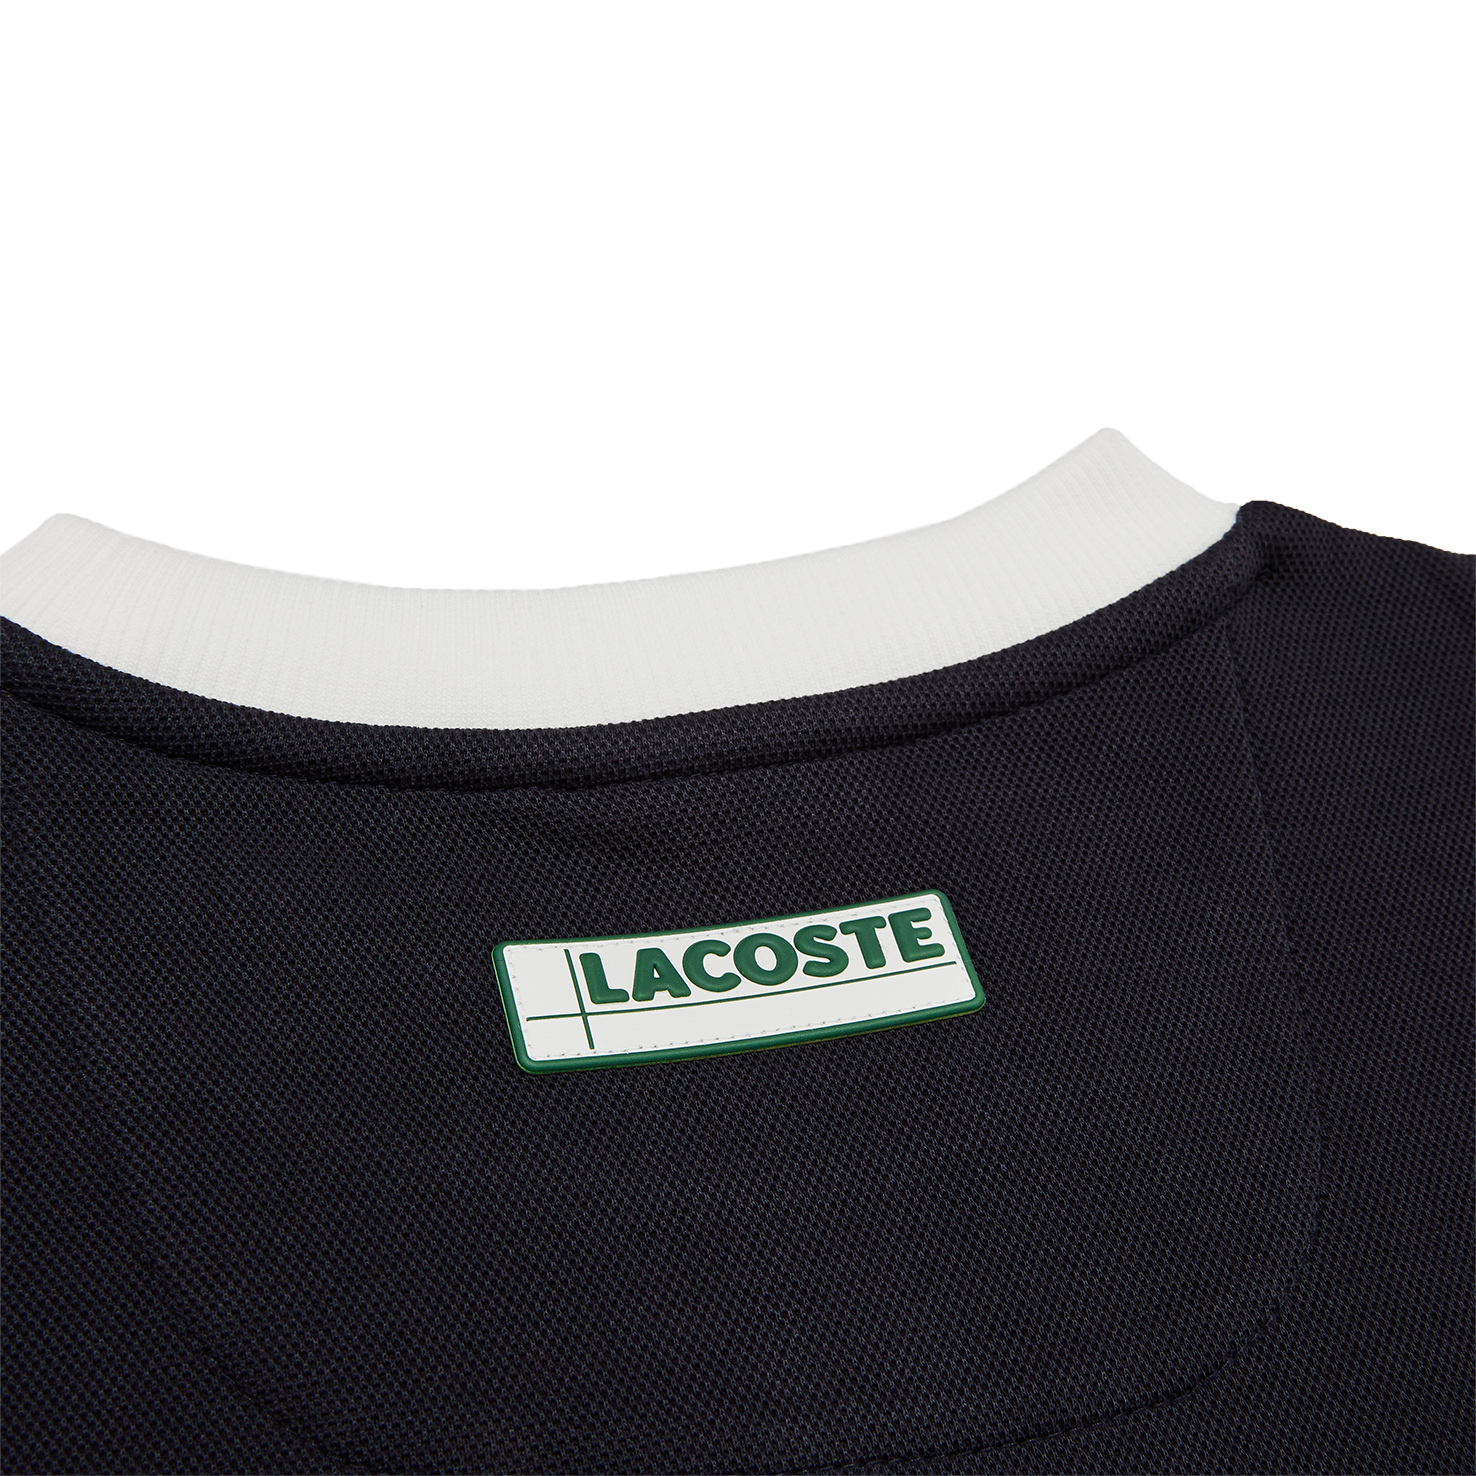 Толстовка Lacoste LACOSTE, размер 52, цвет черный SH2185 - фото 5